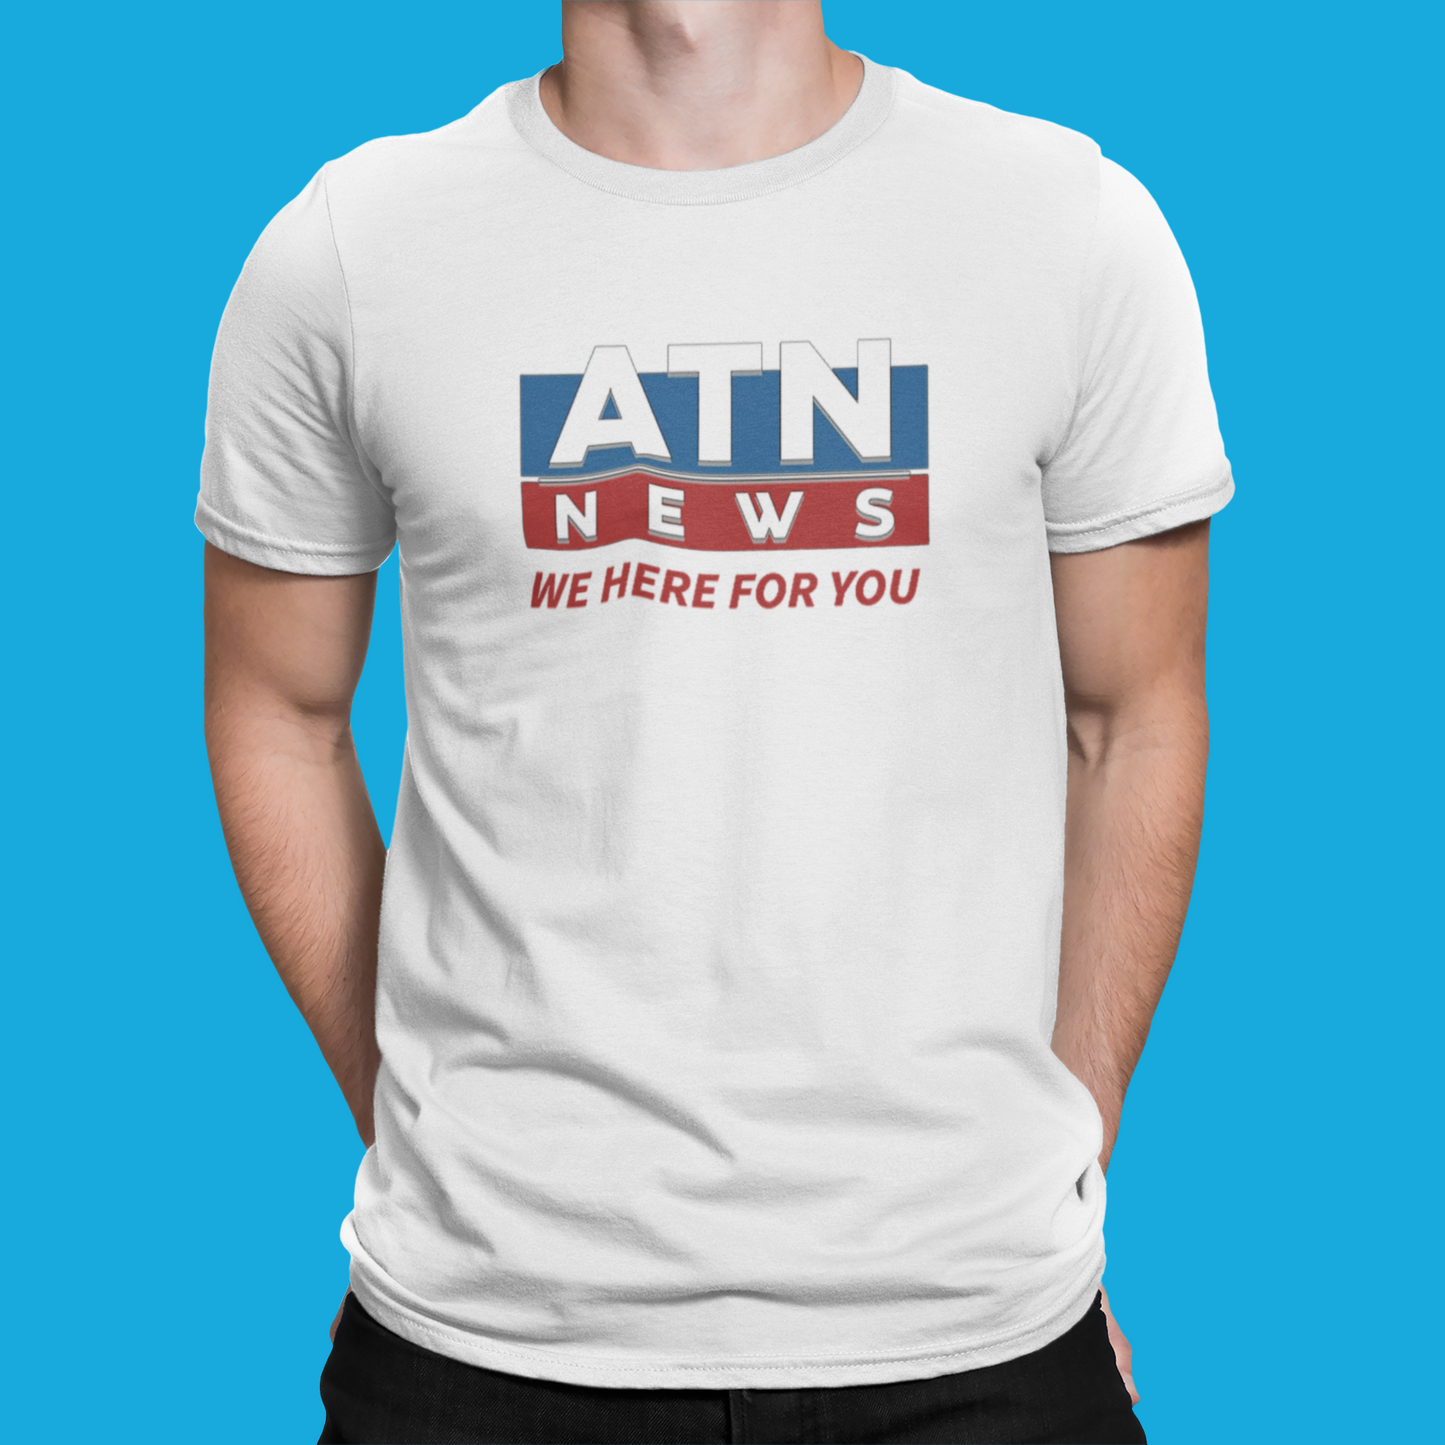 Camiseta "ATN News" - Succession - Séries de TV